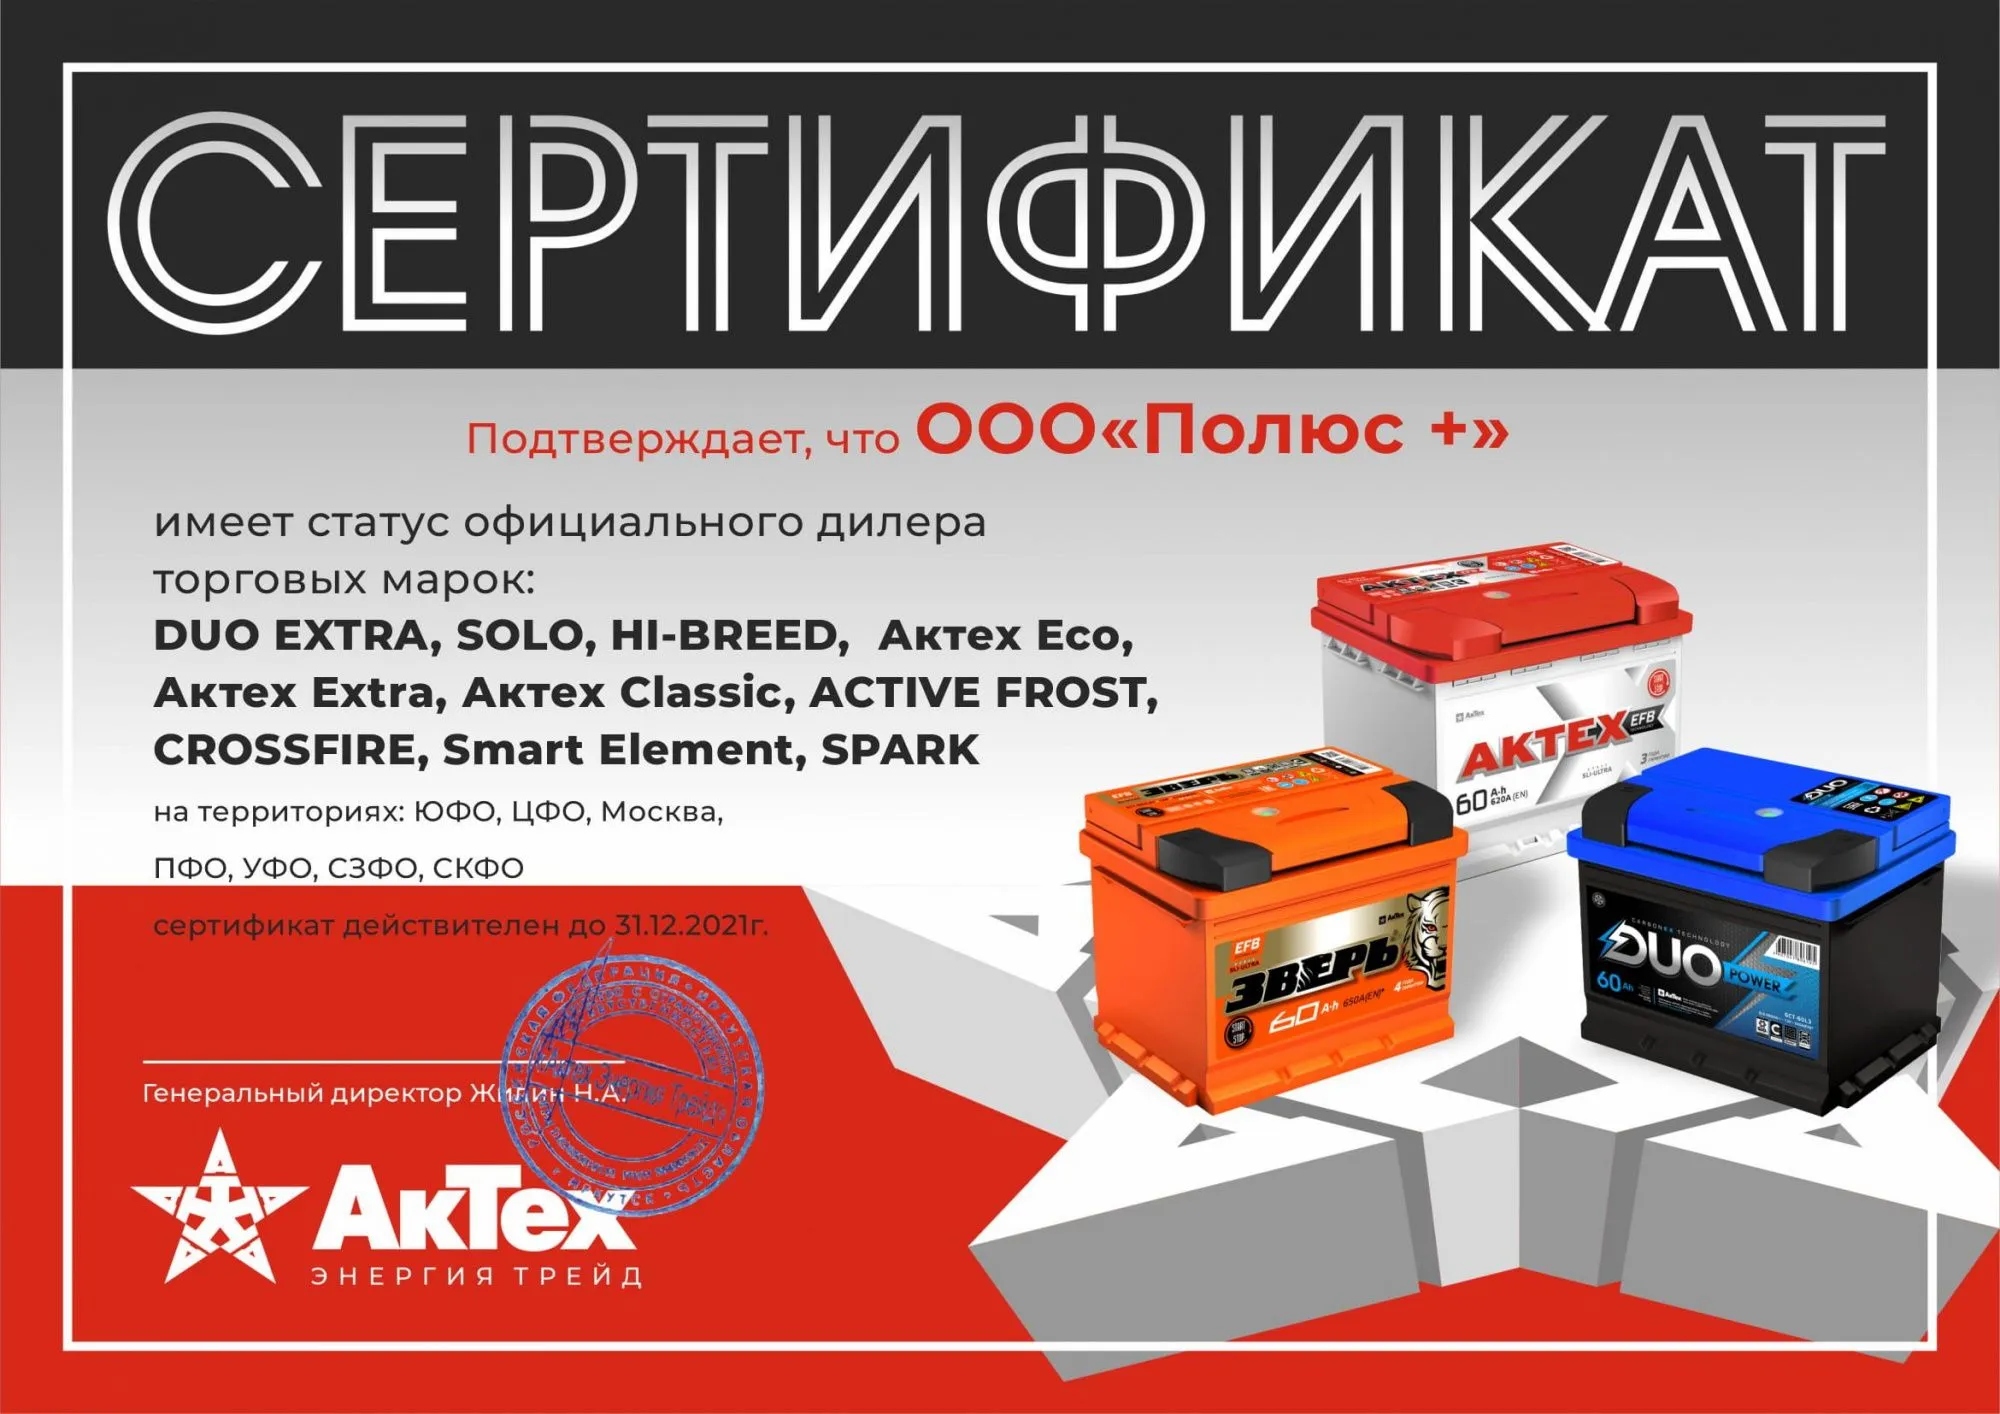 Сертификат дистрибьютора торговых марок: DUO EXTRA, SOLO, SOLO ASIA, HIBREED, SMART ELEMENT, SPARK, AKTEX EXTRA, AKTEX CLASSIC, AKTEX ECO